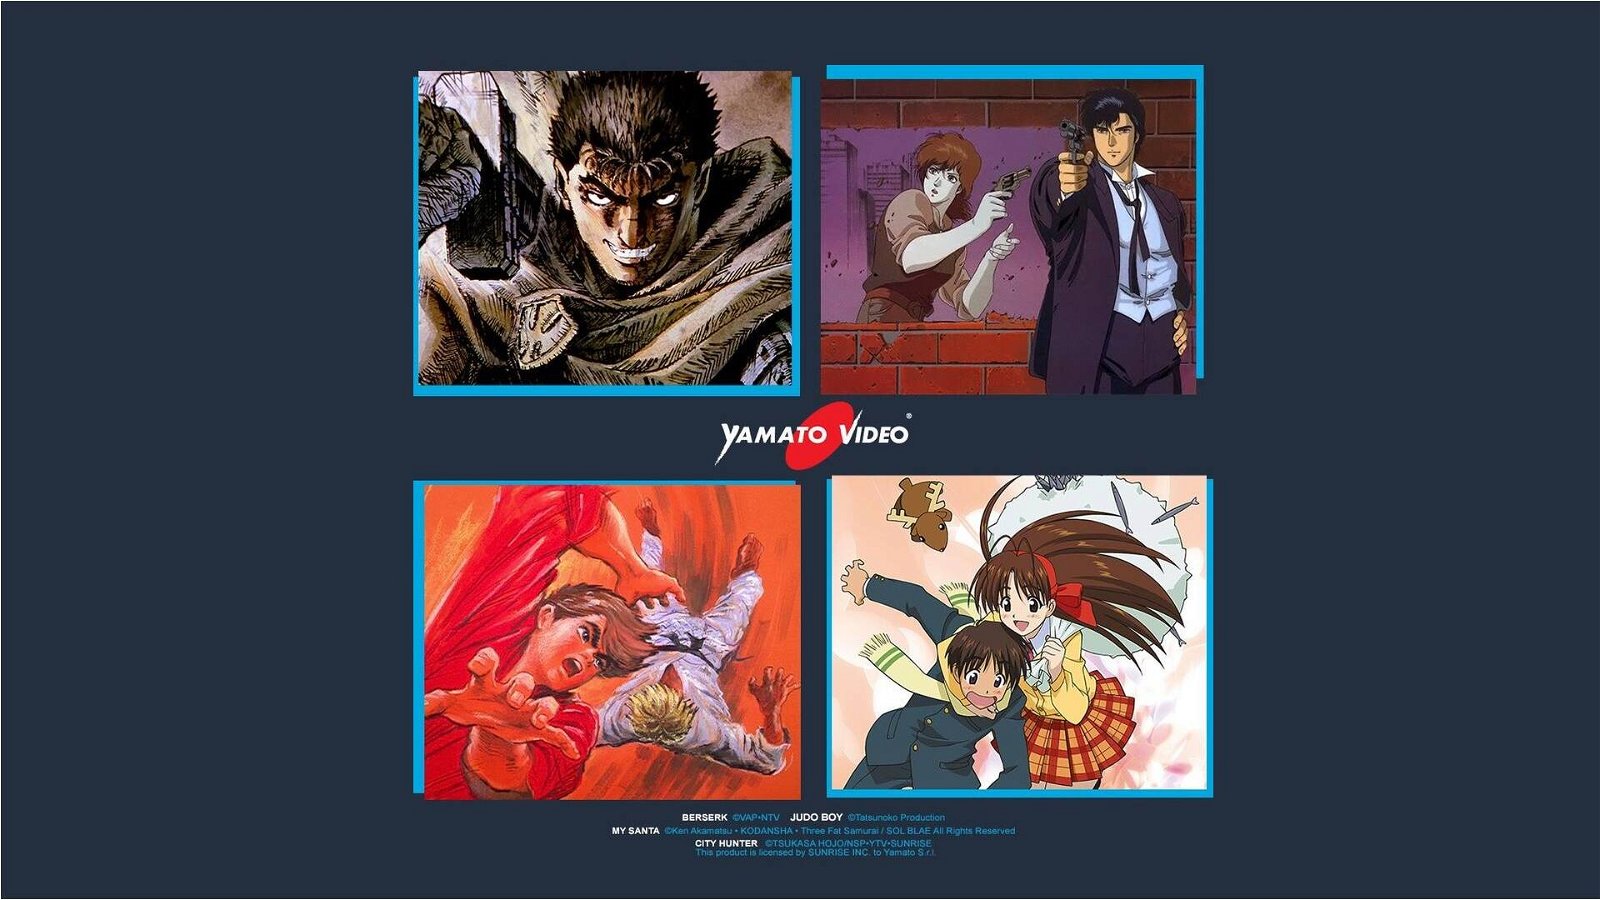 Immagine di Amazon Prime Video - tutti i nuovi anime Yamato Video disponibili